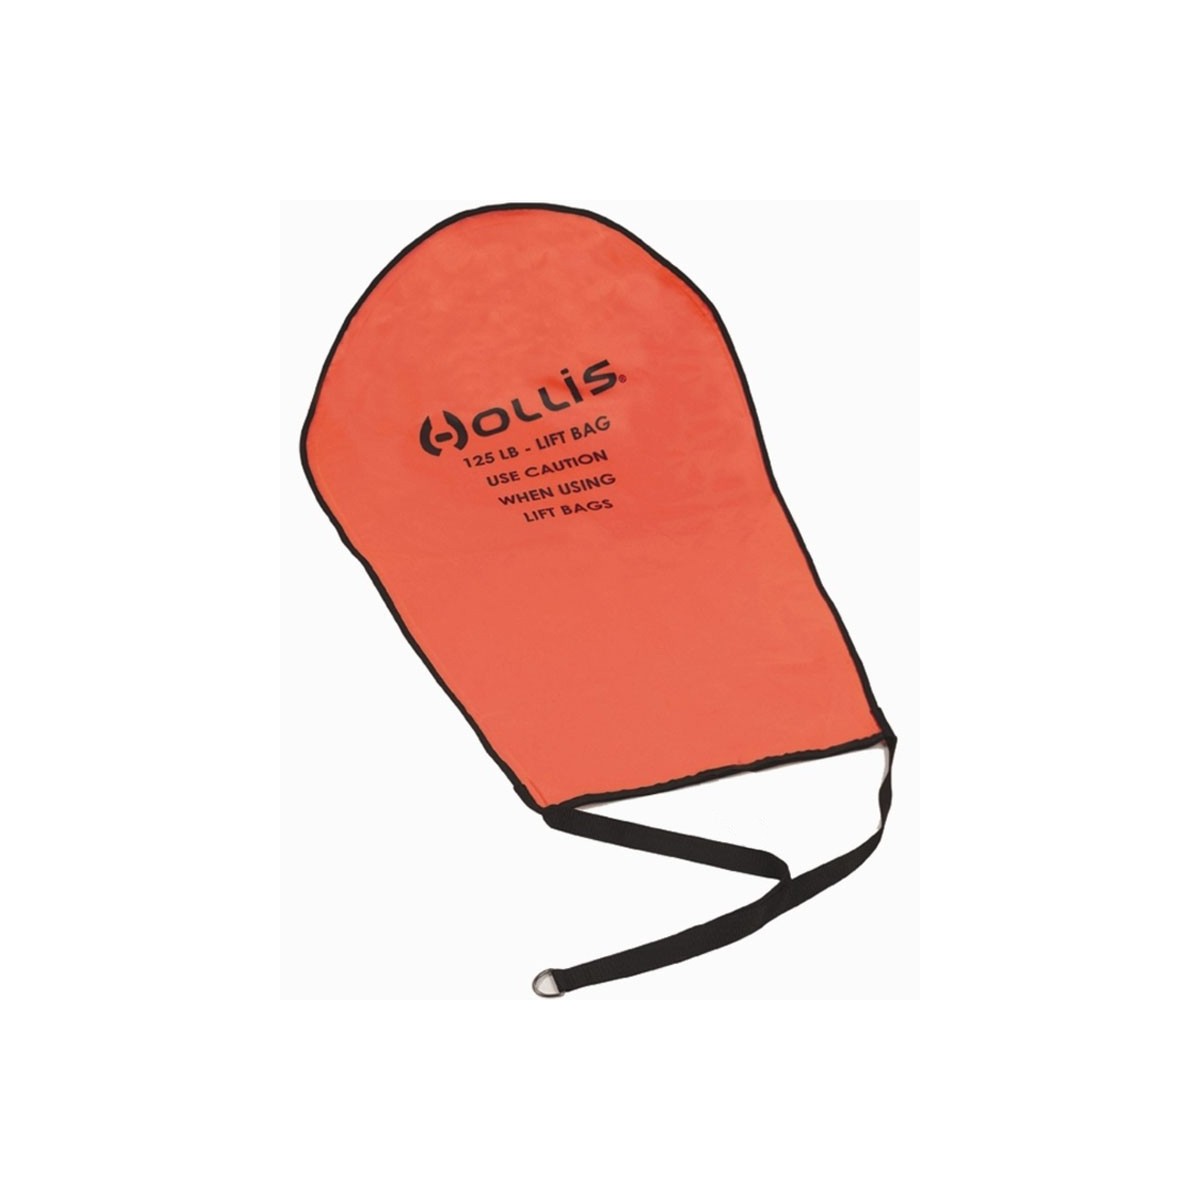 Hollis 125Lb Lift Bag